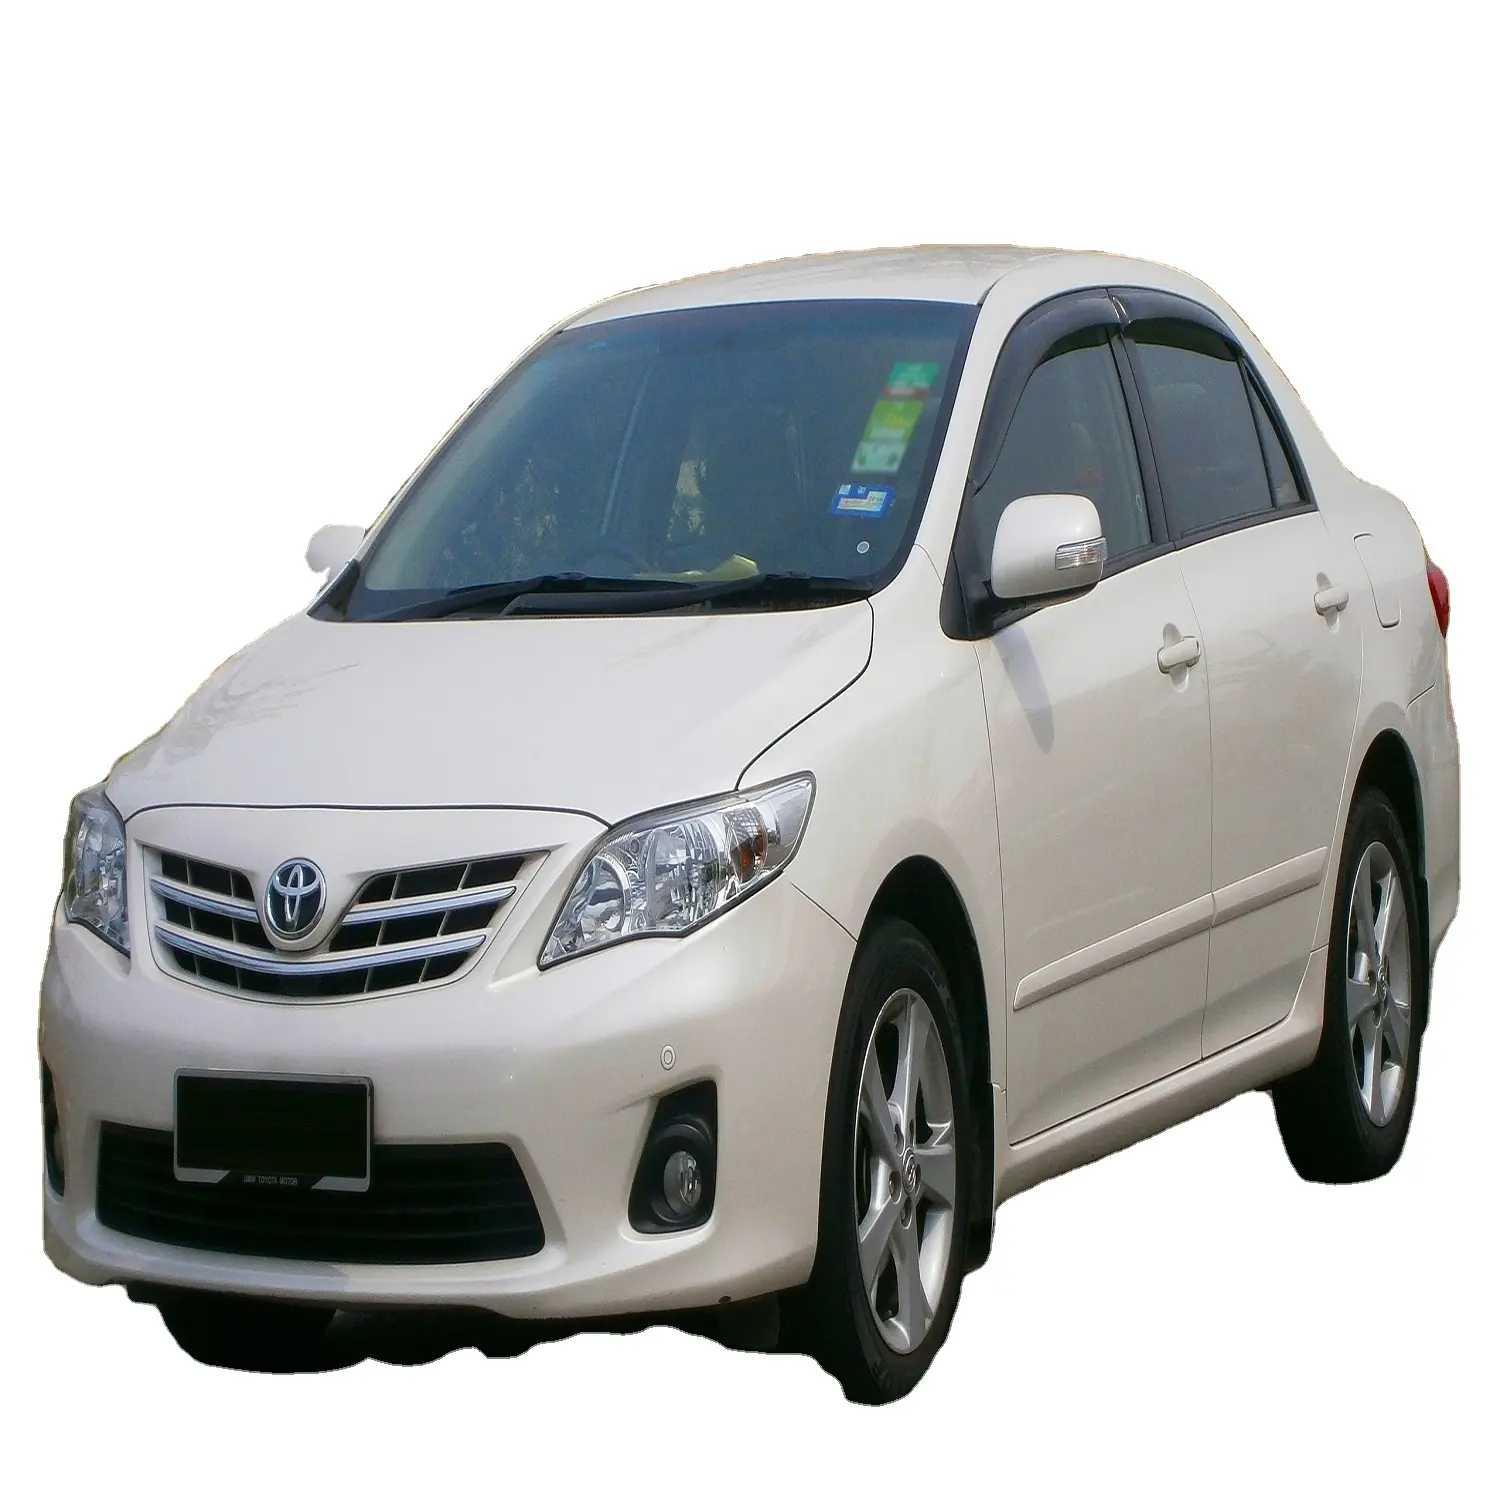 Подержанные автомобили Toyota Corolla Altis (престижная модель) для продажи, все модели и годы доступны на экспорт